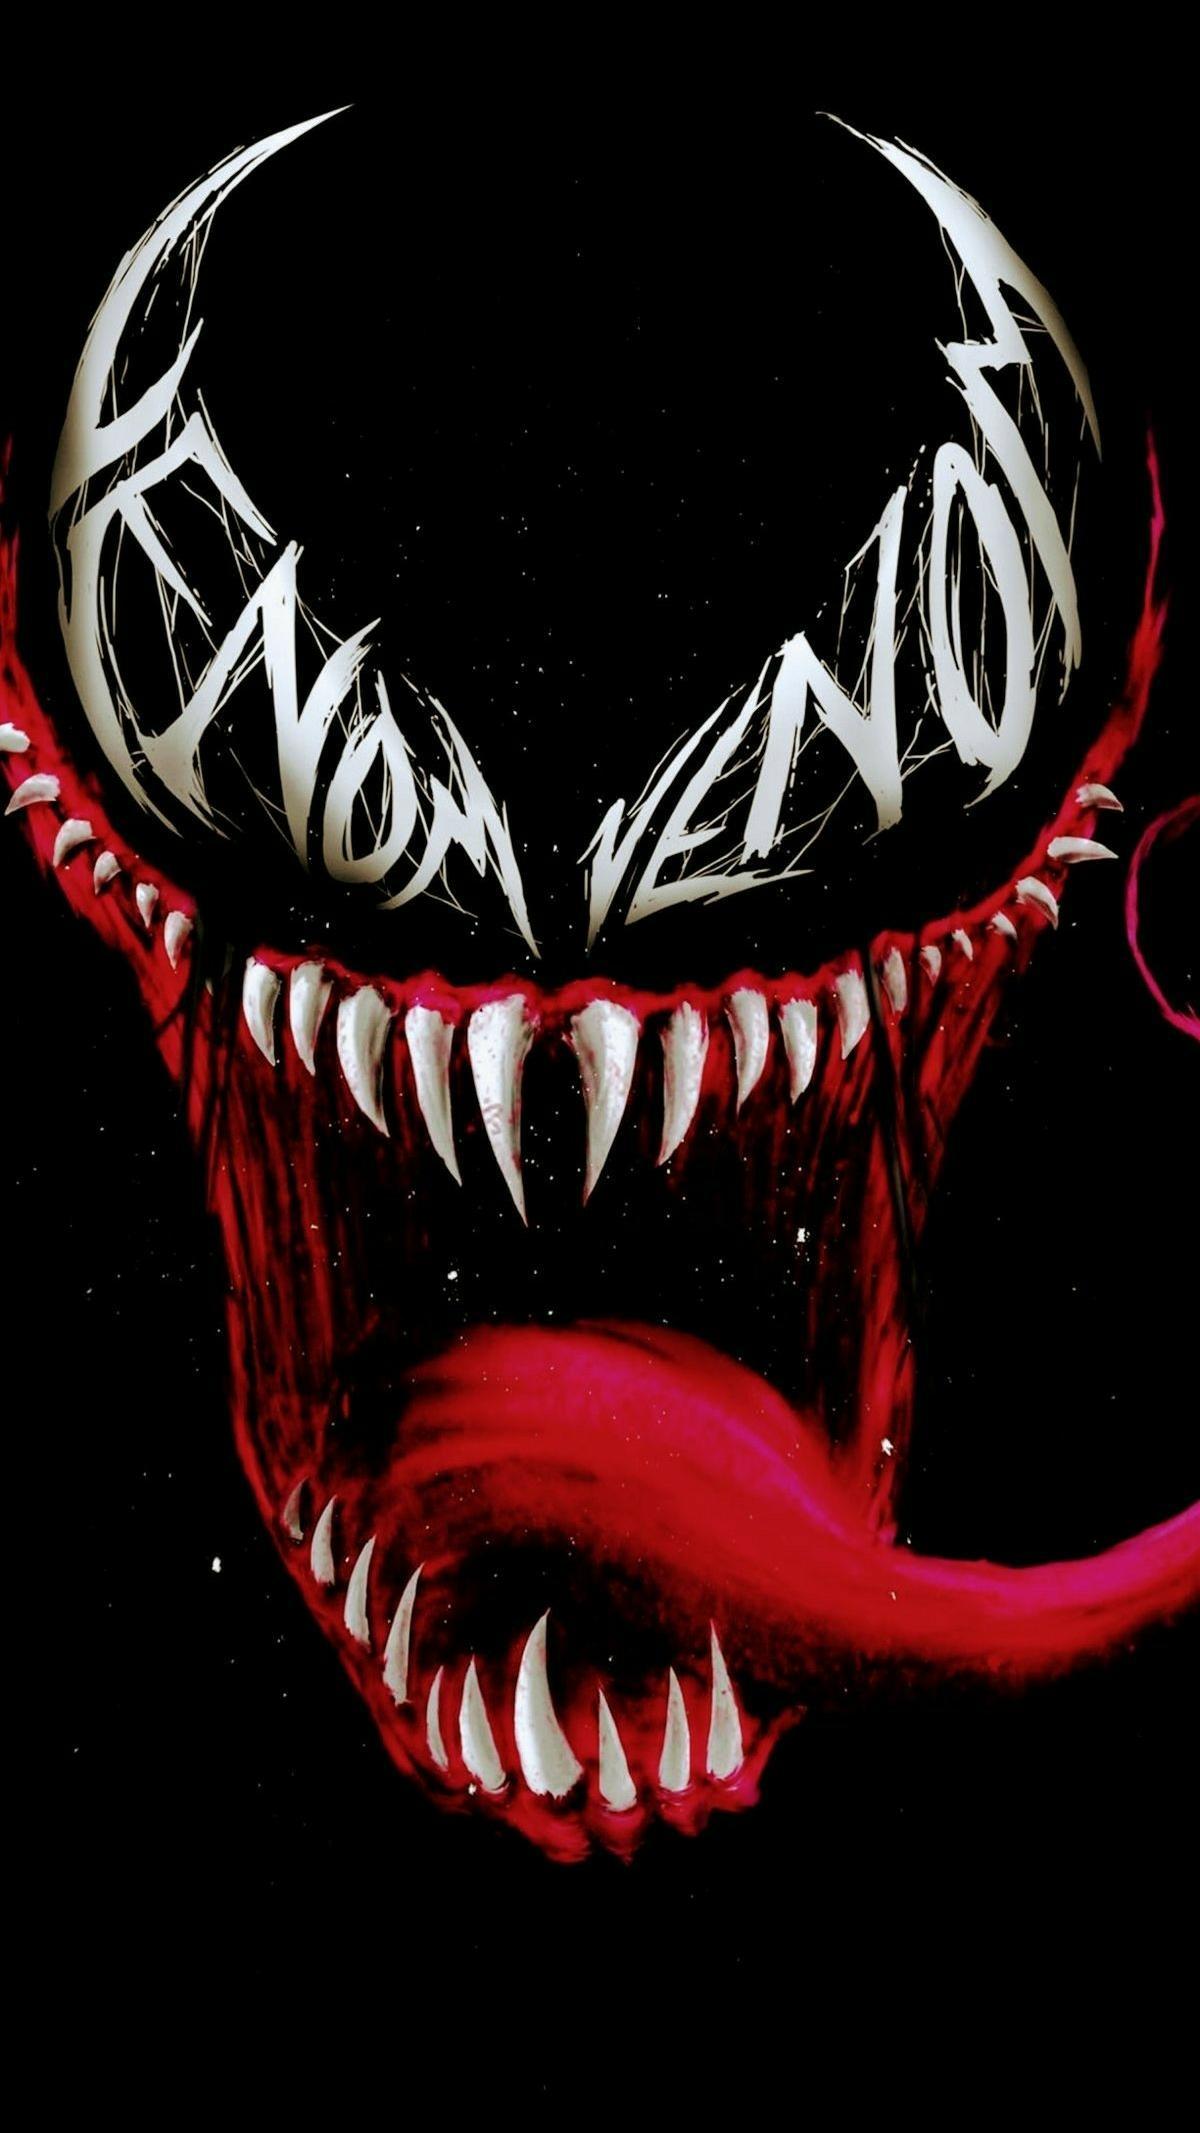 Fondos de Venom no oficiales para Android - APK Descargar